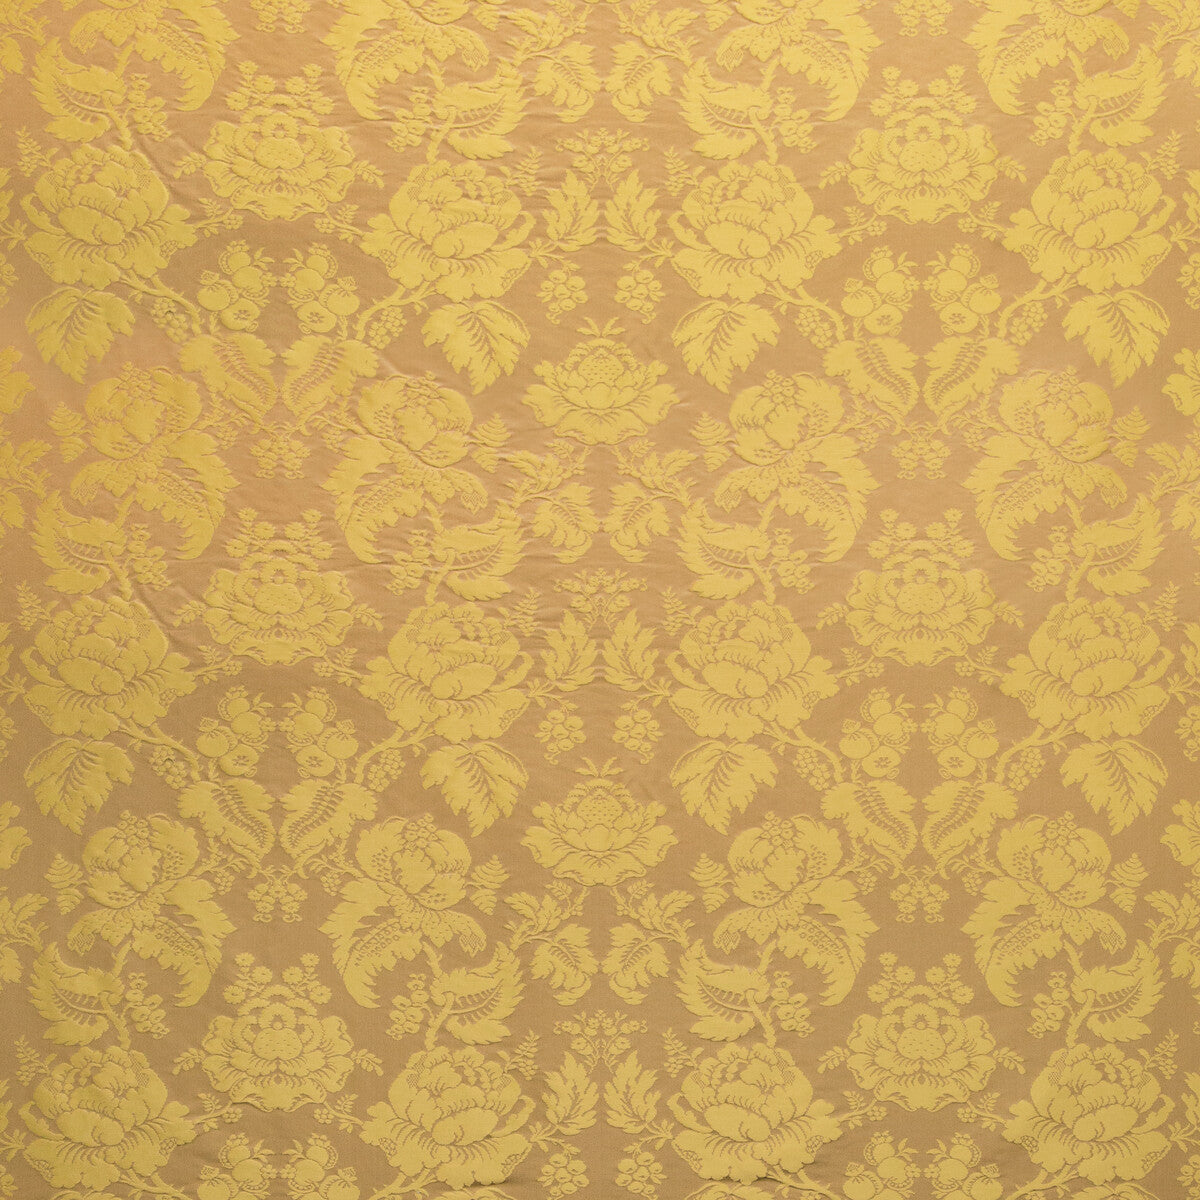 Moulins Damask fabric in antique color - pattern BR-81035.164.0 - by Brunschwig &amp; Fils